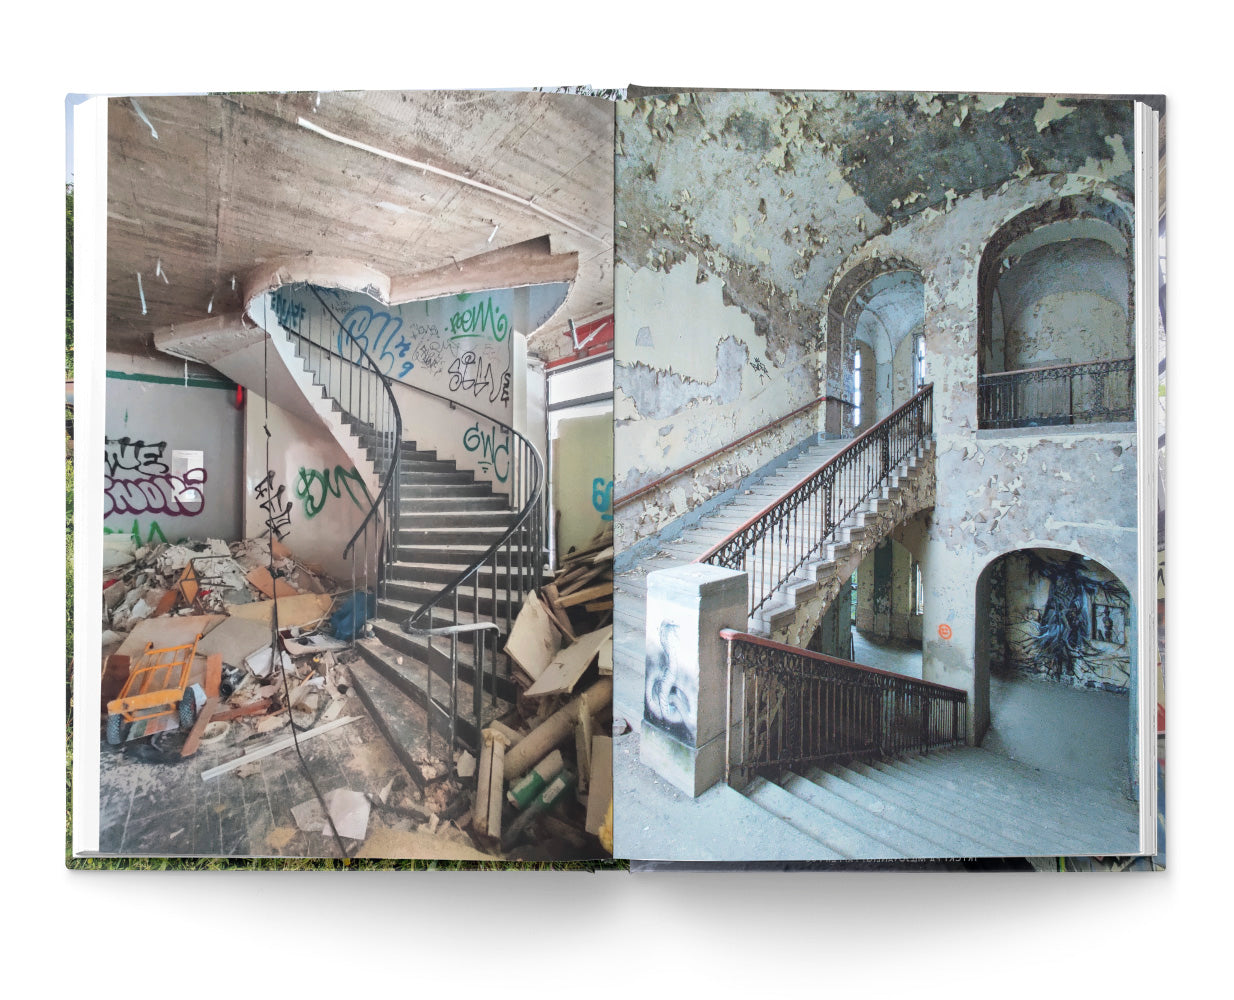 Bortglömda platser: En fotografisk resa bland gömda och förfallna byggnader